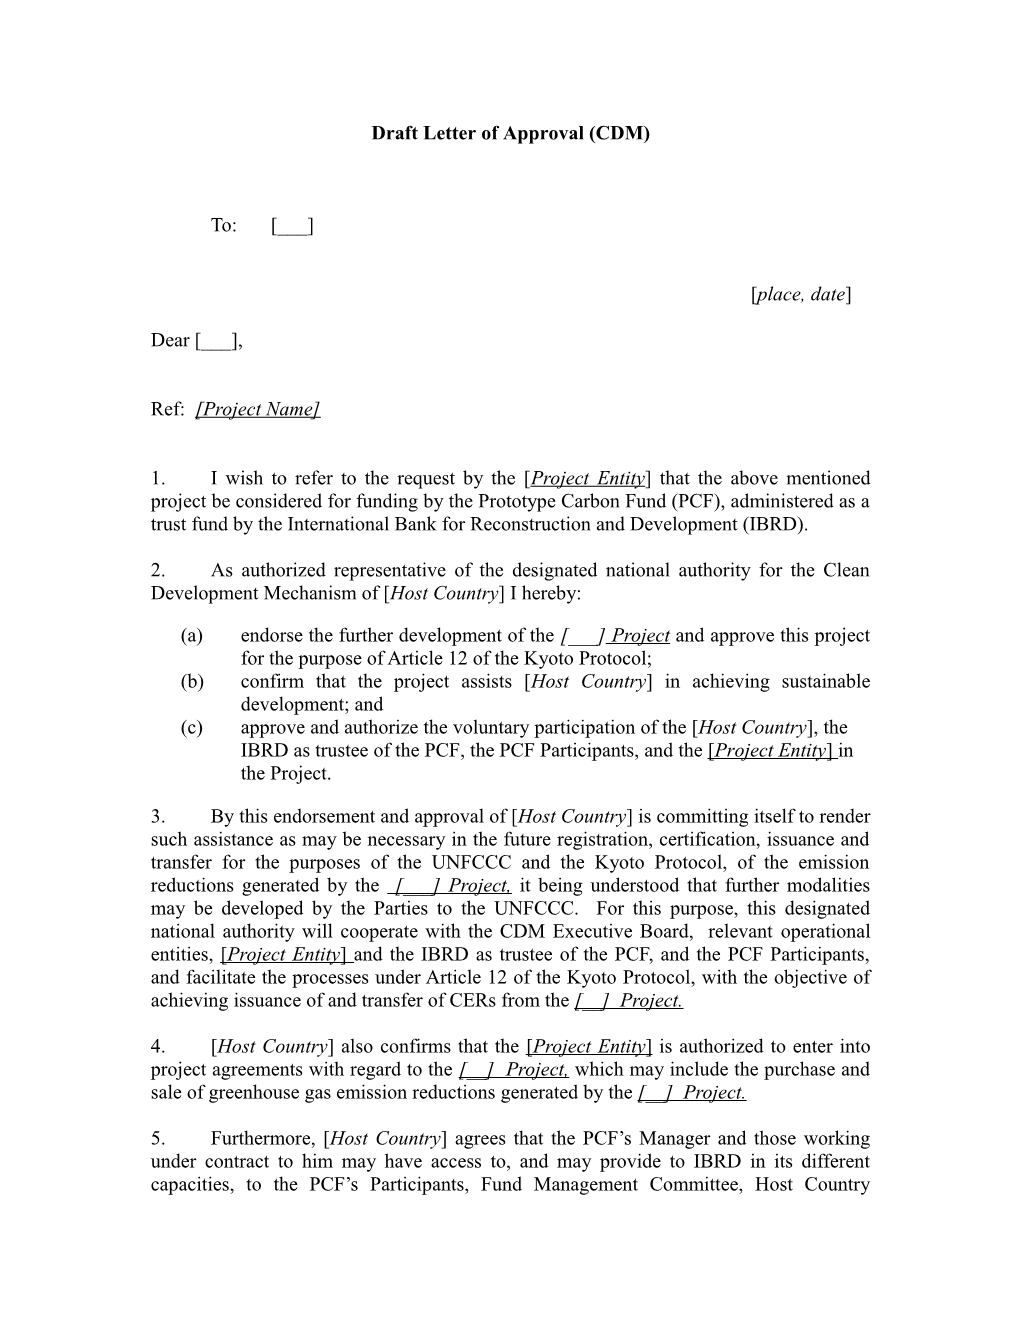 Model Letter of Approval (CDM)